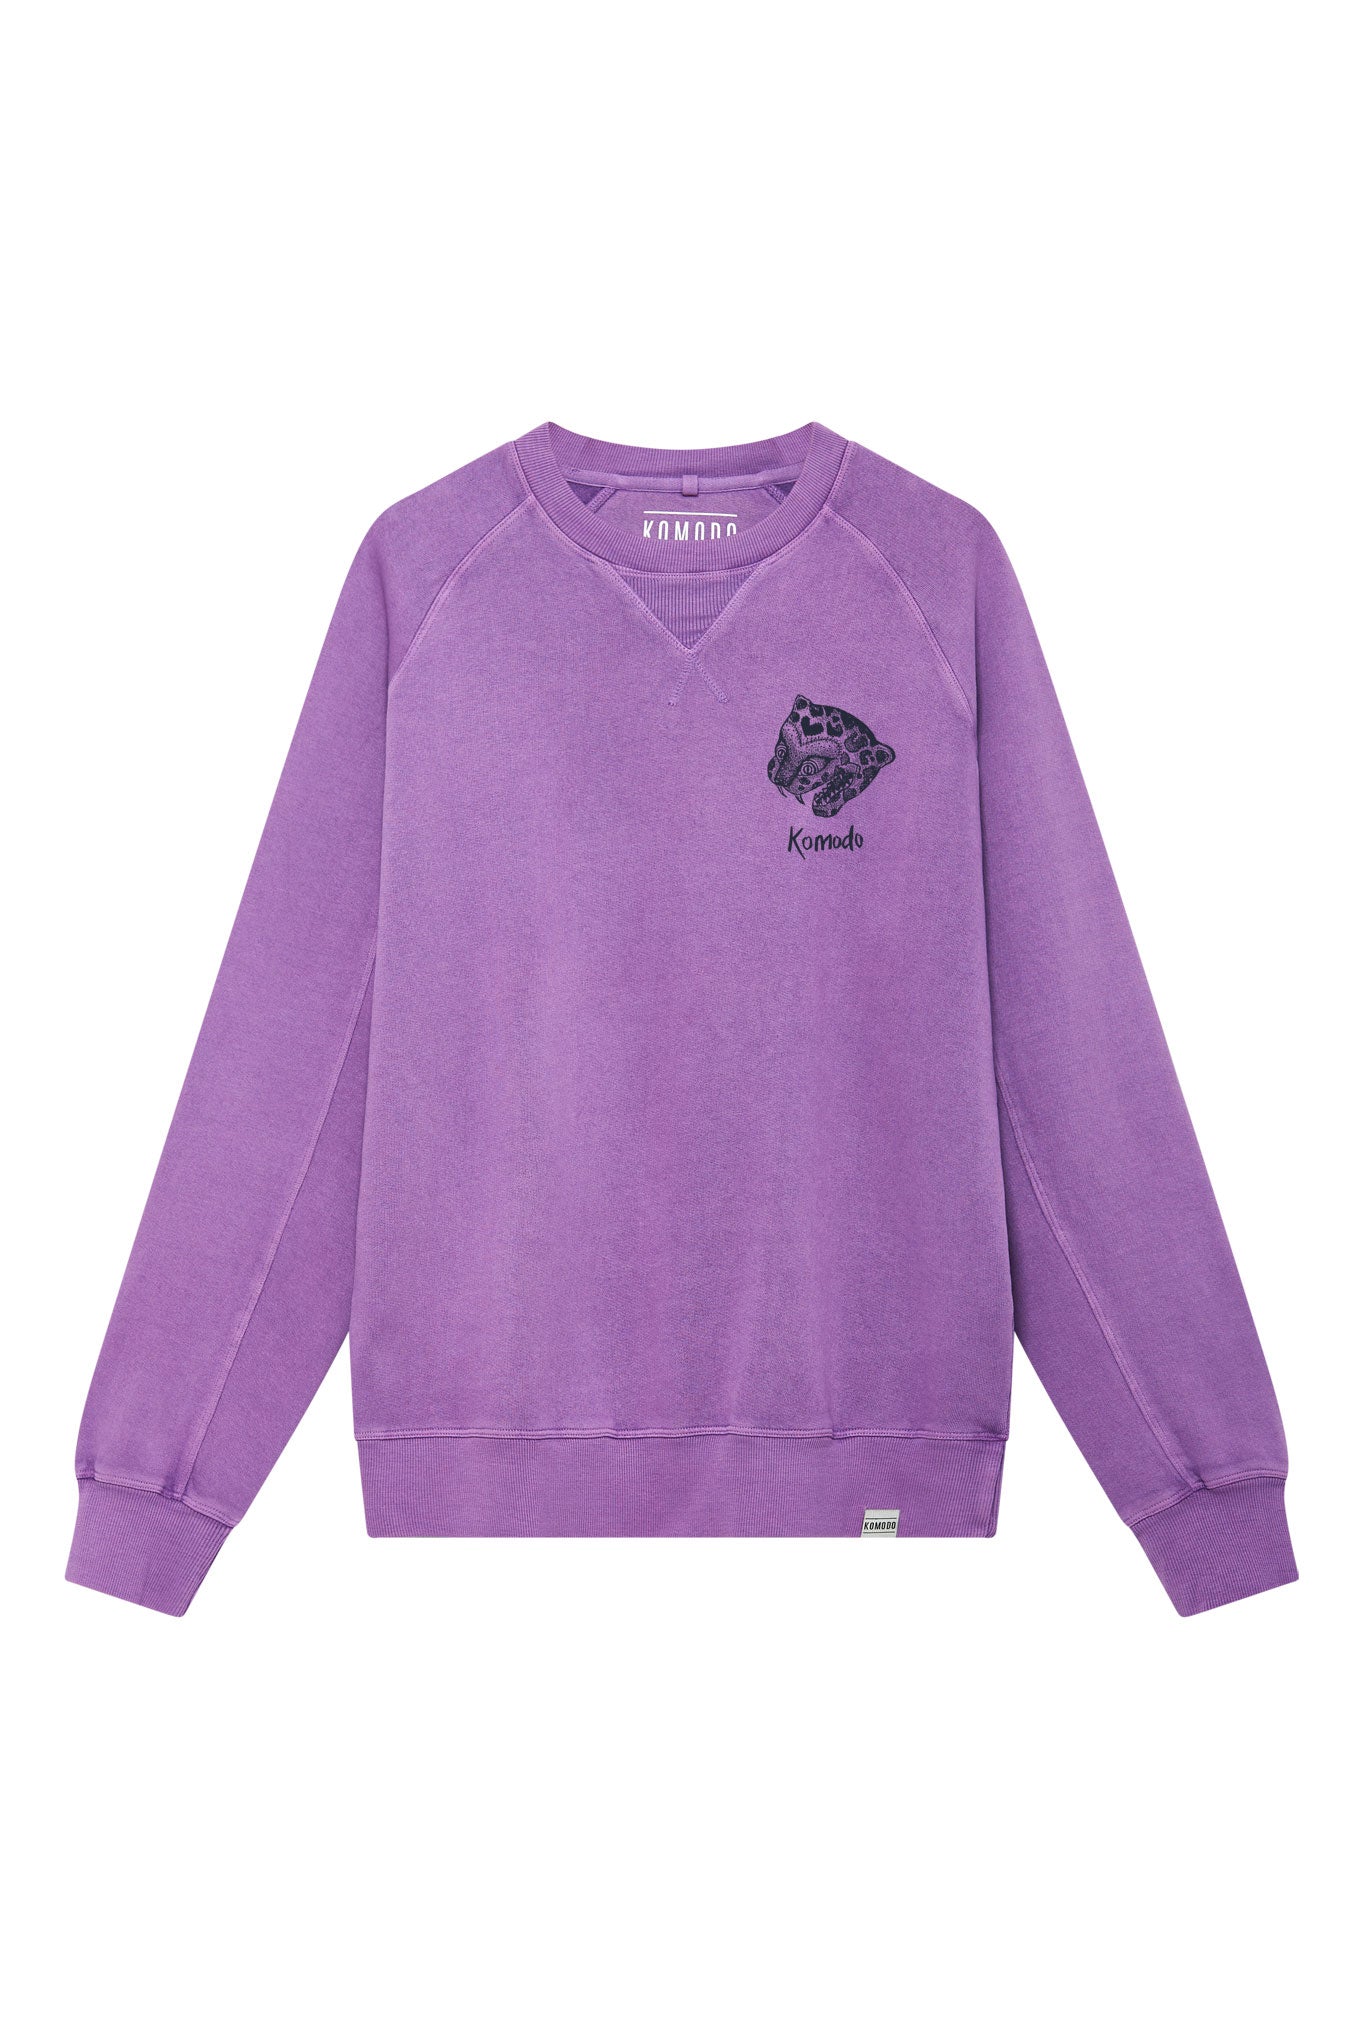 Komodo Pink / Purple Nepali Leopard - Gots Organic Cotton Back Print Sweat